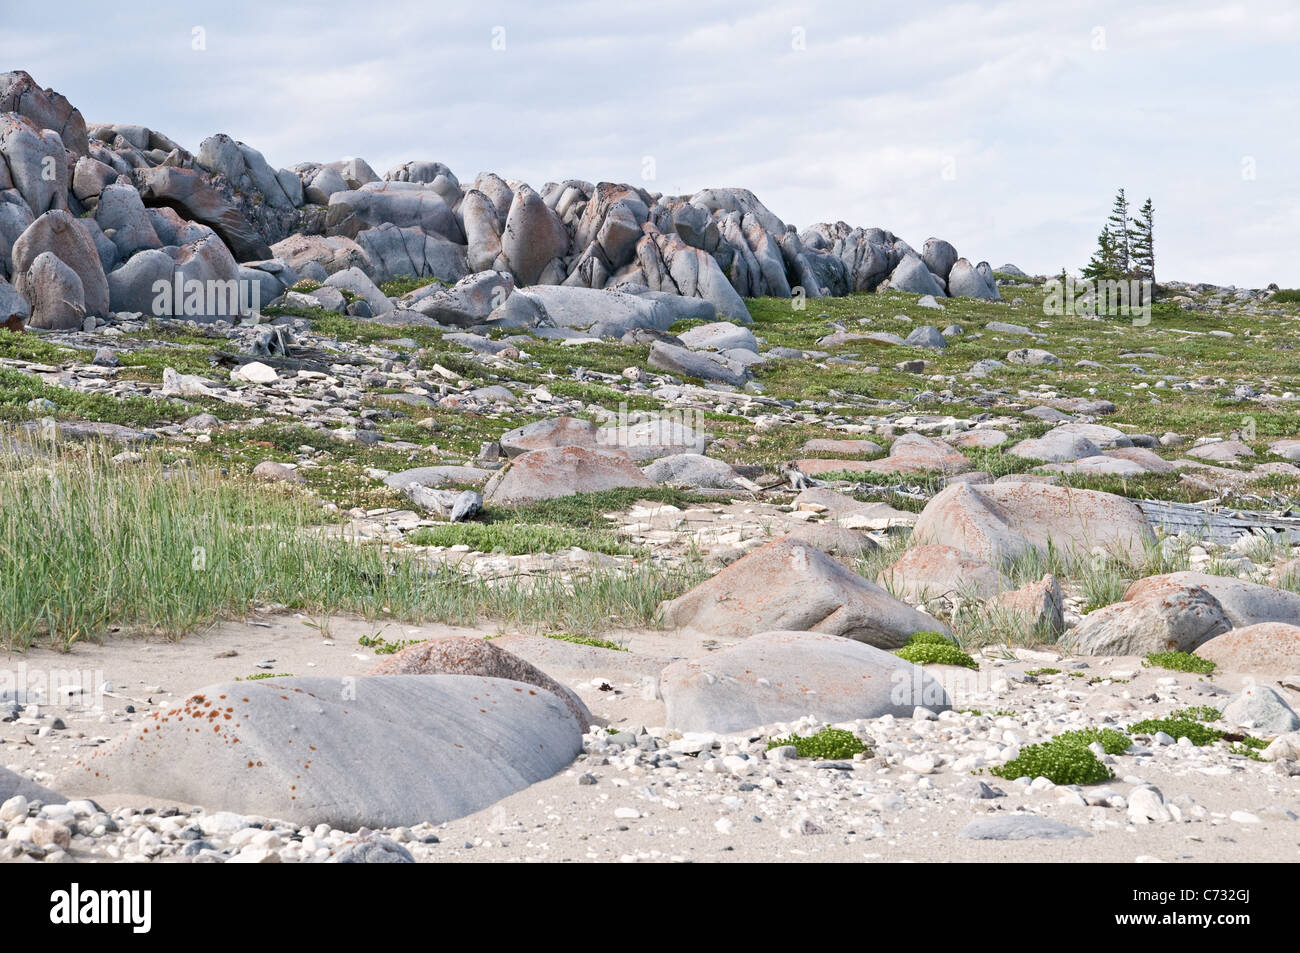 Terrain de la toundra rocheuse le long de la côte ouest de la Baie d'Hudson, à la limite du Bouclier canadien, près de la ville de Churchill, Manitoba, Canada. Banque D'Images